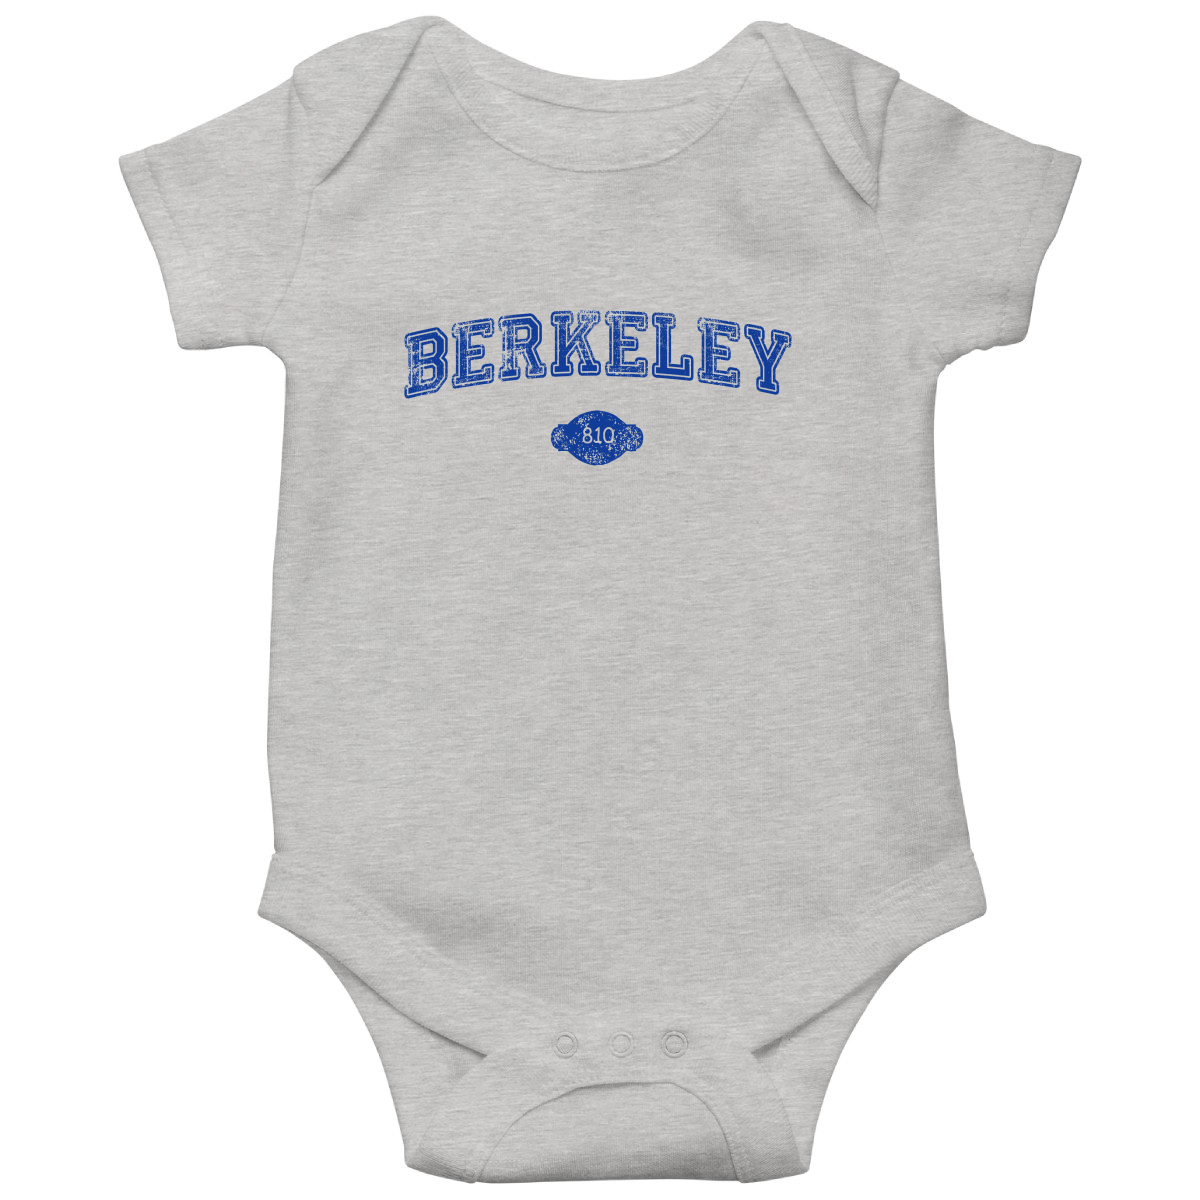 Berkeley 1878 Represent Baby Bodysuits